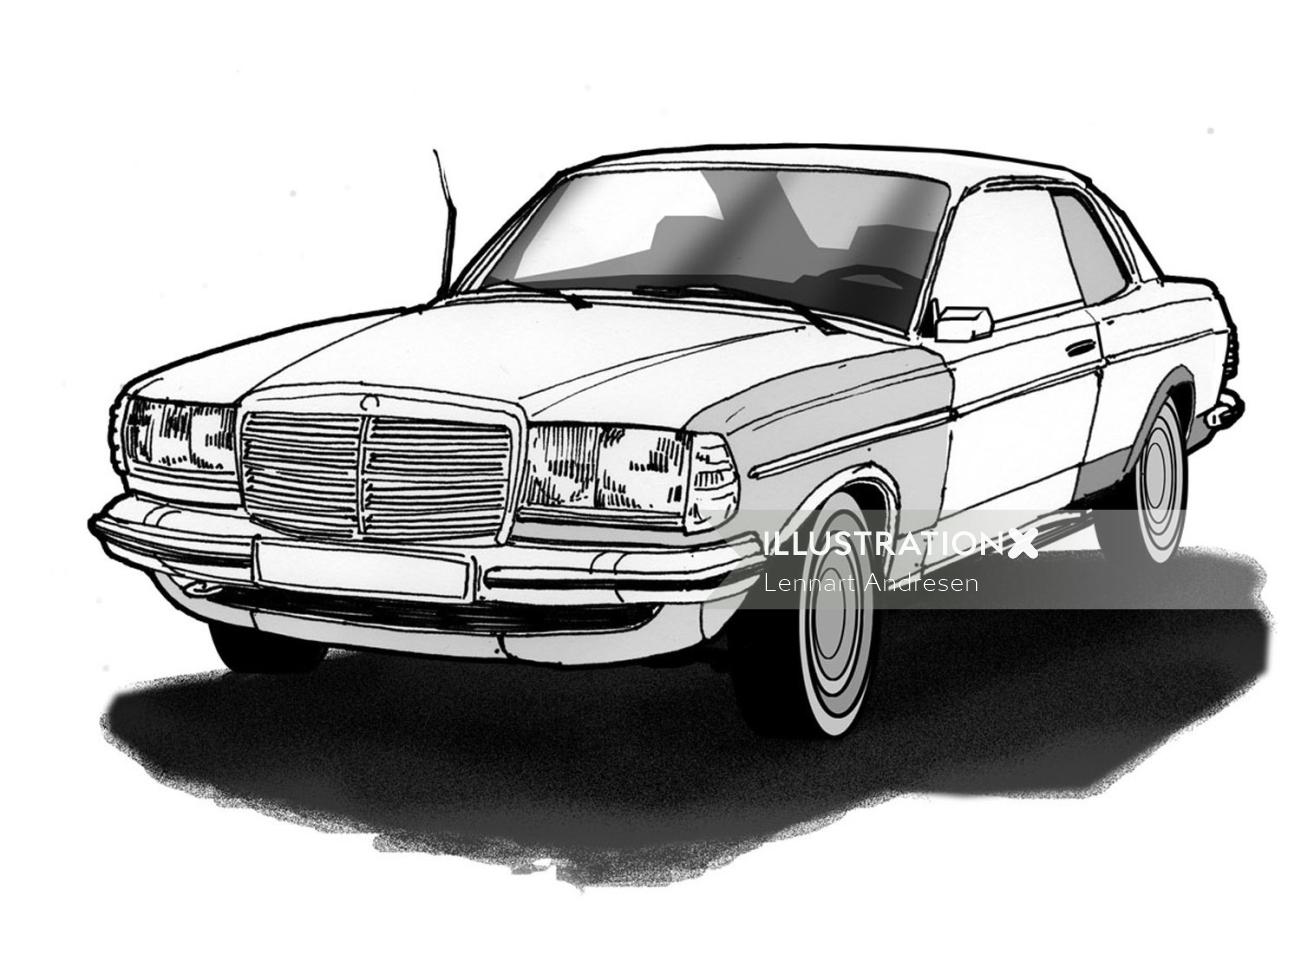 Ilustración técnica en blanco y negro del coche